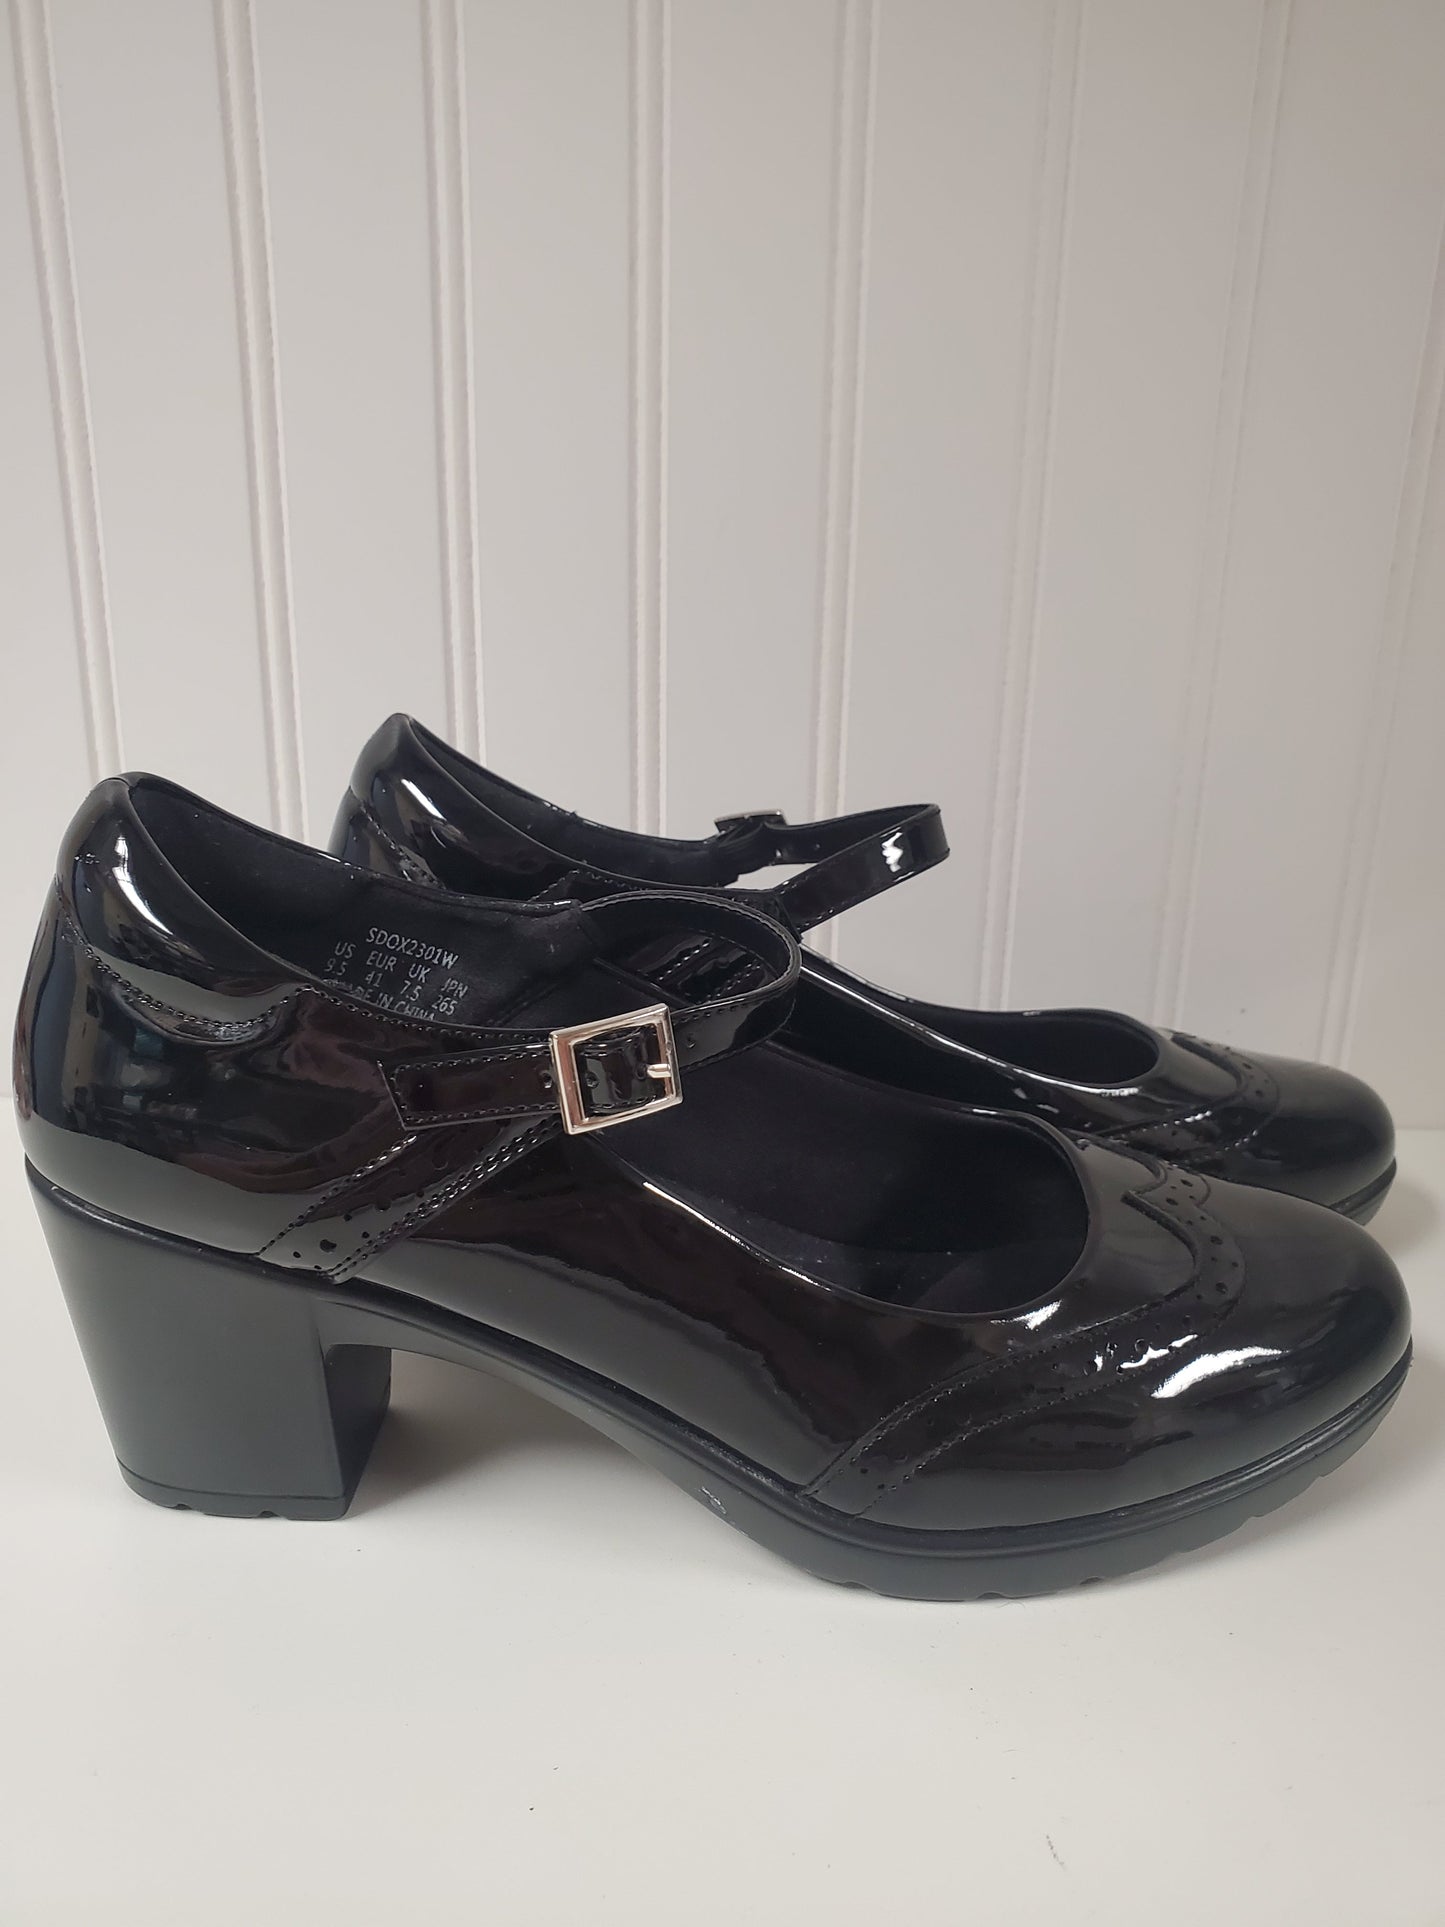 Black Shoes Heels Block Cmb, Size 9.5